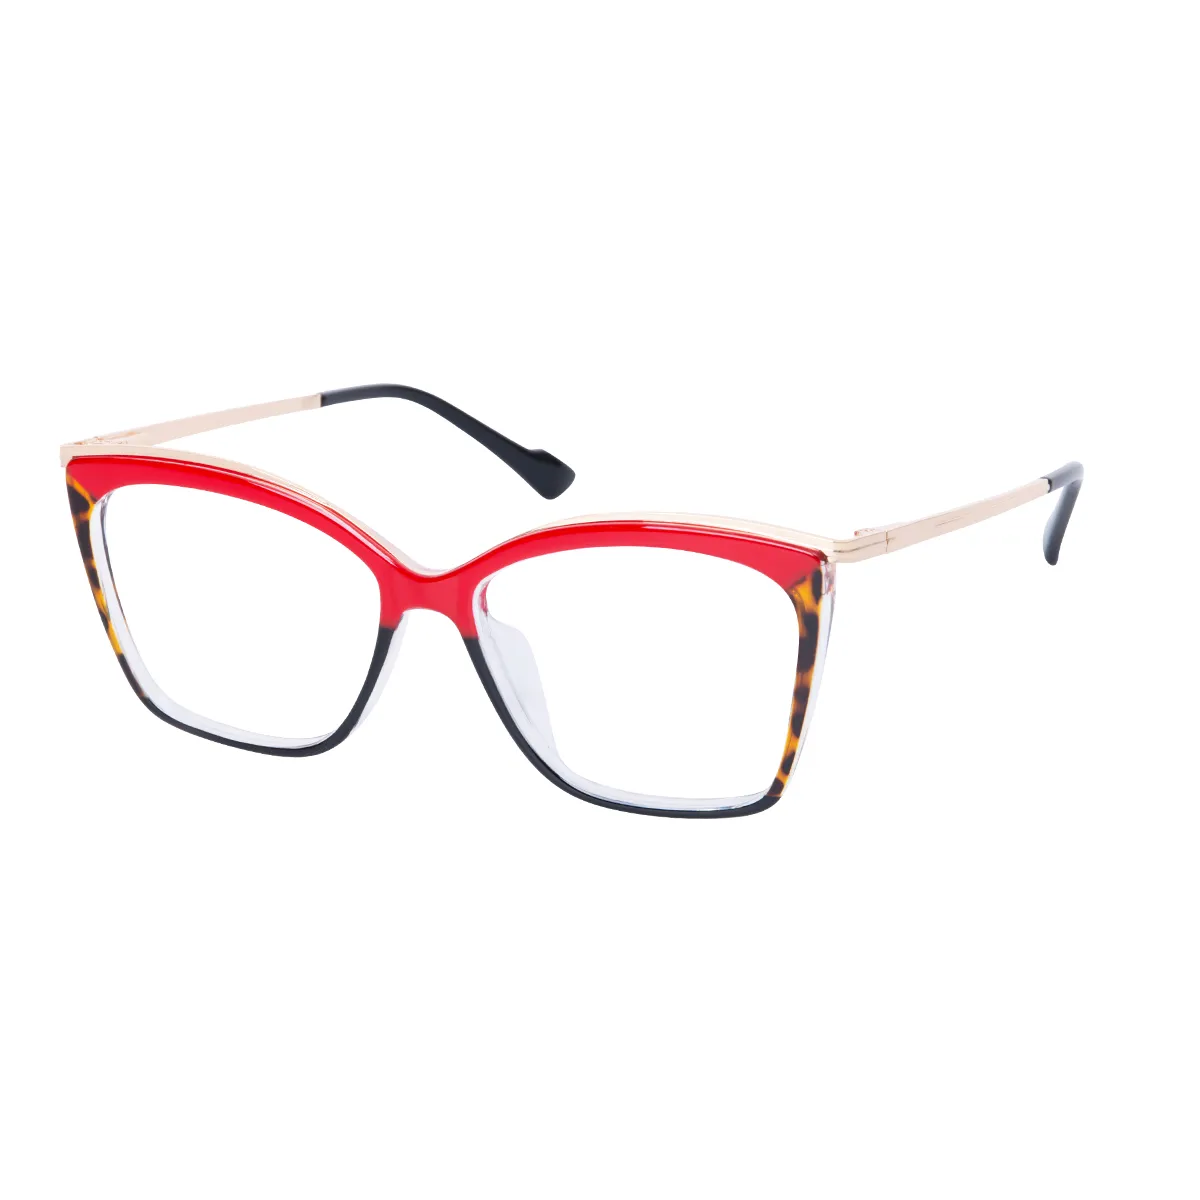 Saffron - Square Red-Black Glasses for Women